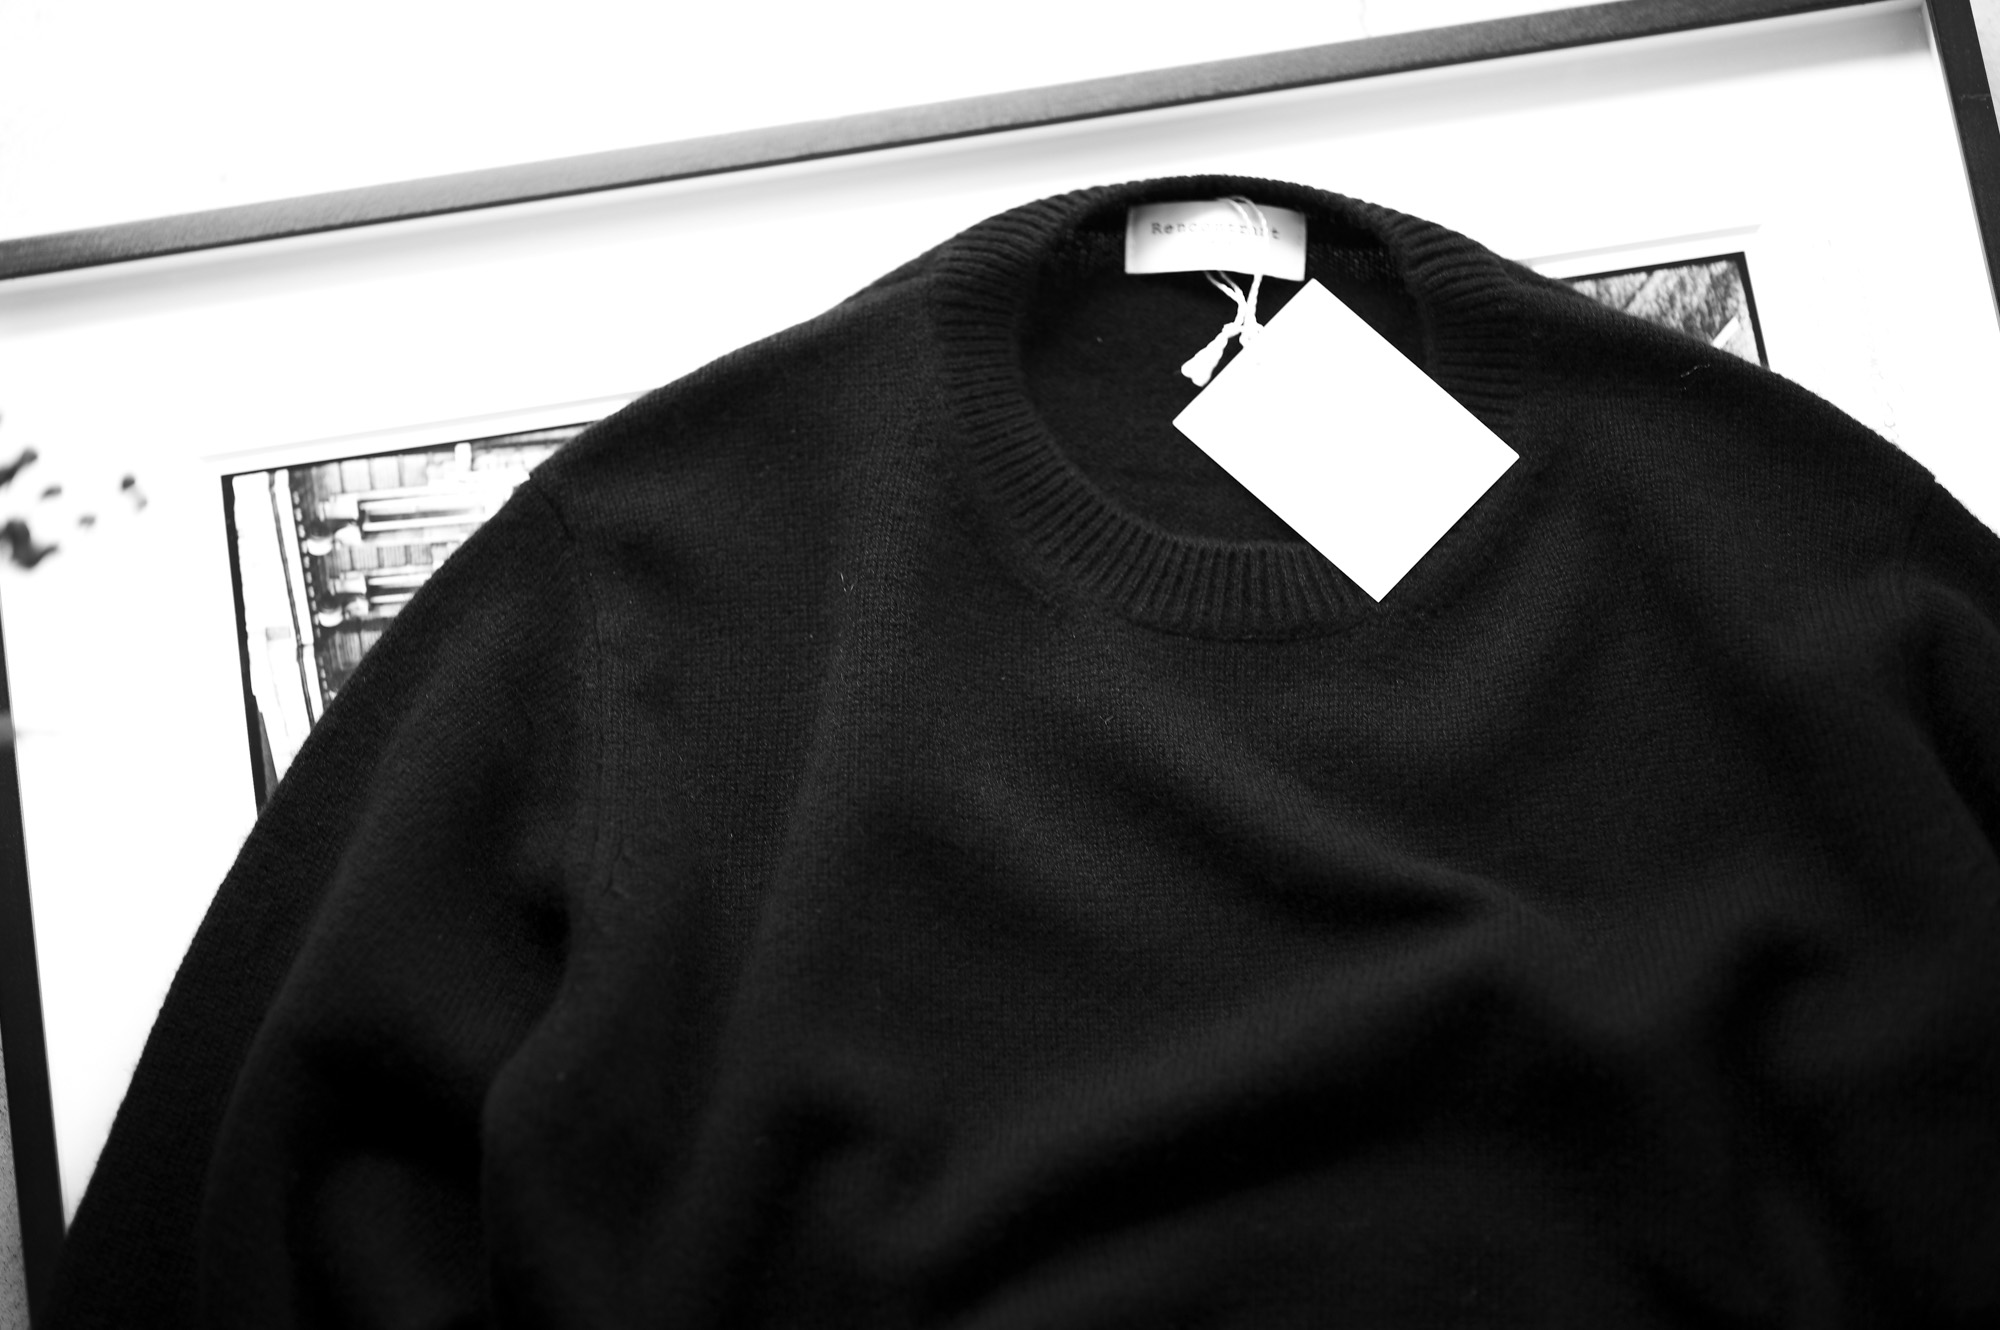 RENCONTRANT (レンコントラント) Cashmere Sweater ミドルゲージ カシミヤクルーネックセーター BLACK (ブラック) 愛知 名古屋 Alto e Diritto altoediritto アルトエデリット カシミア